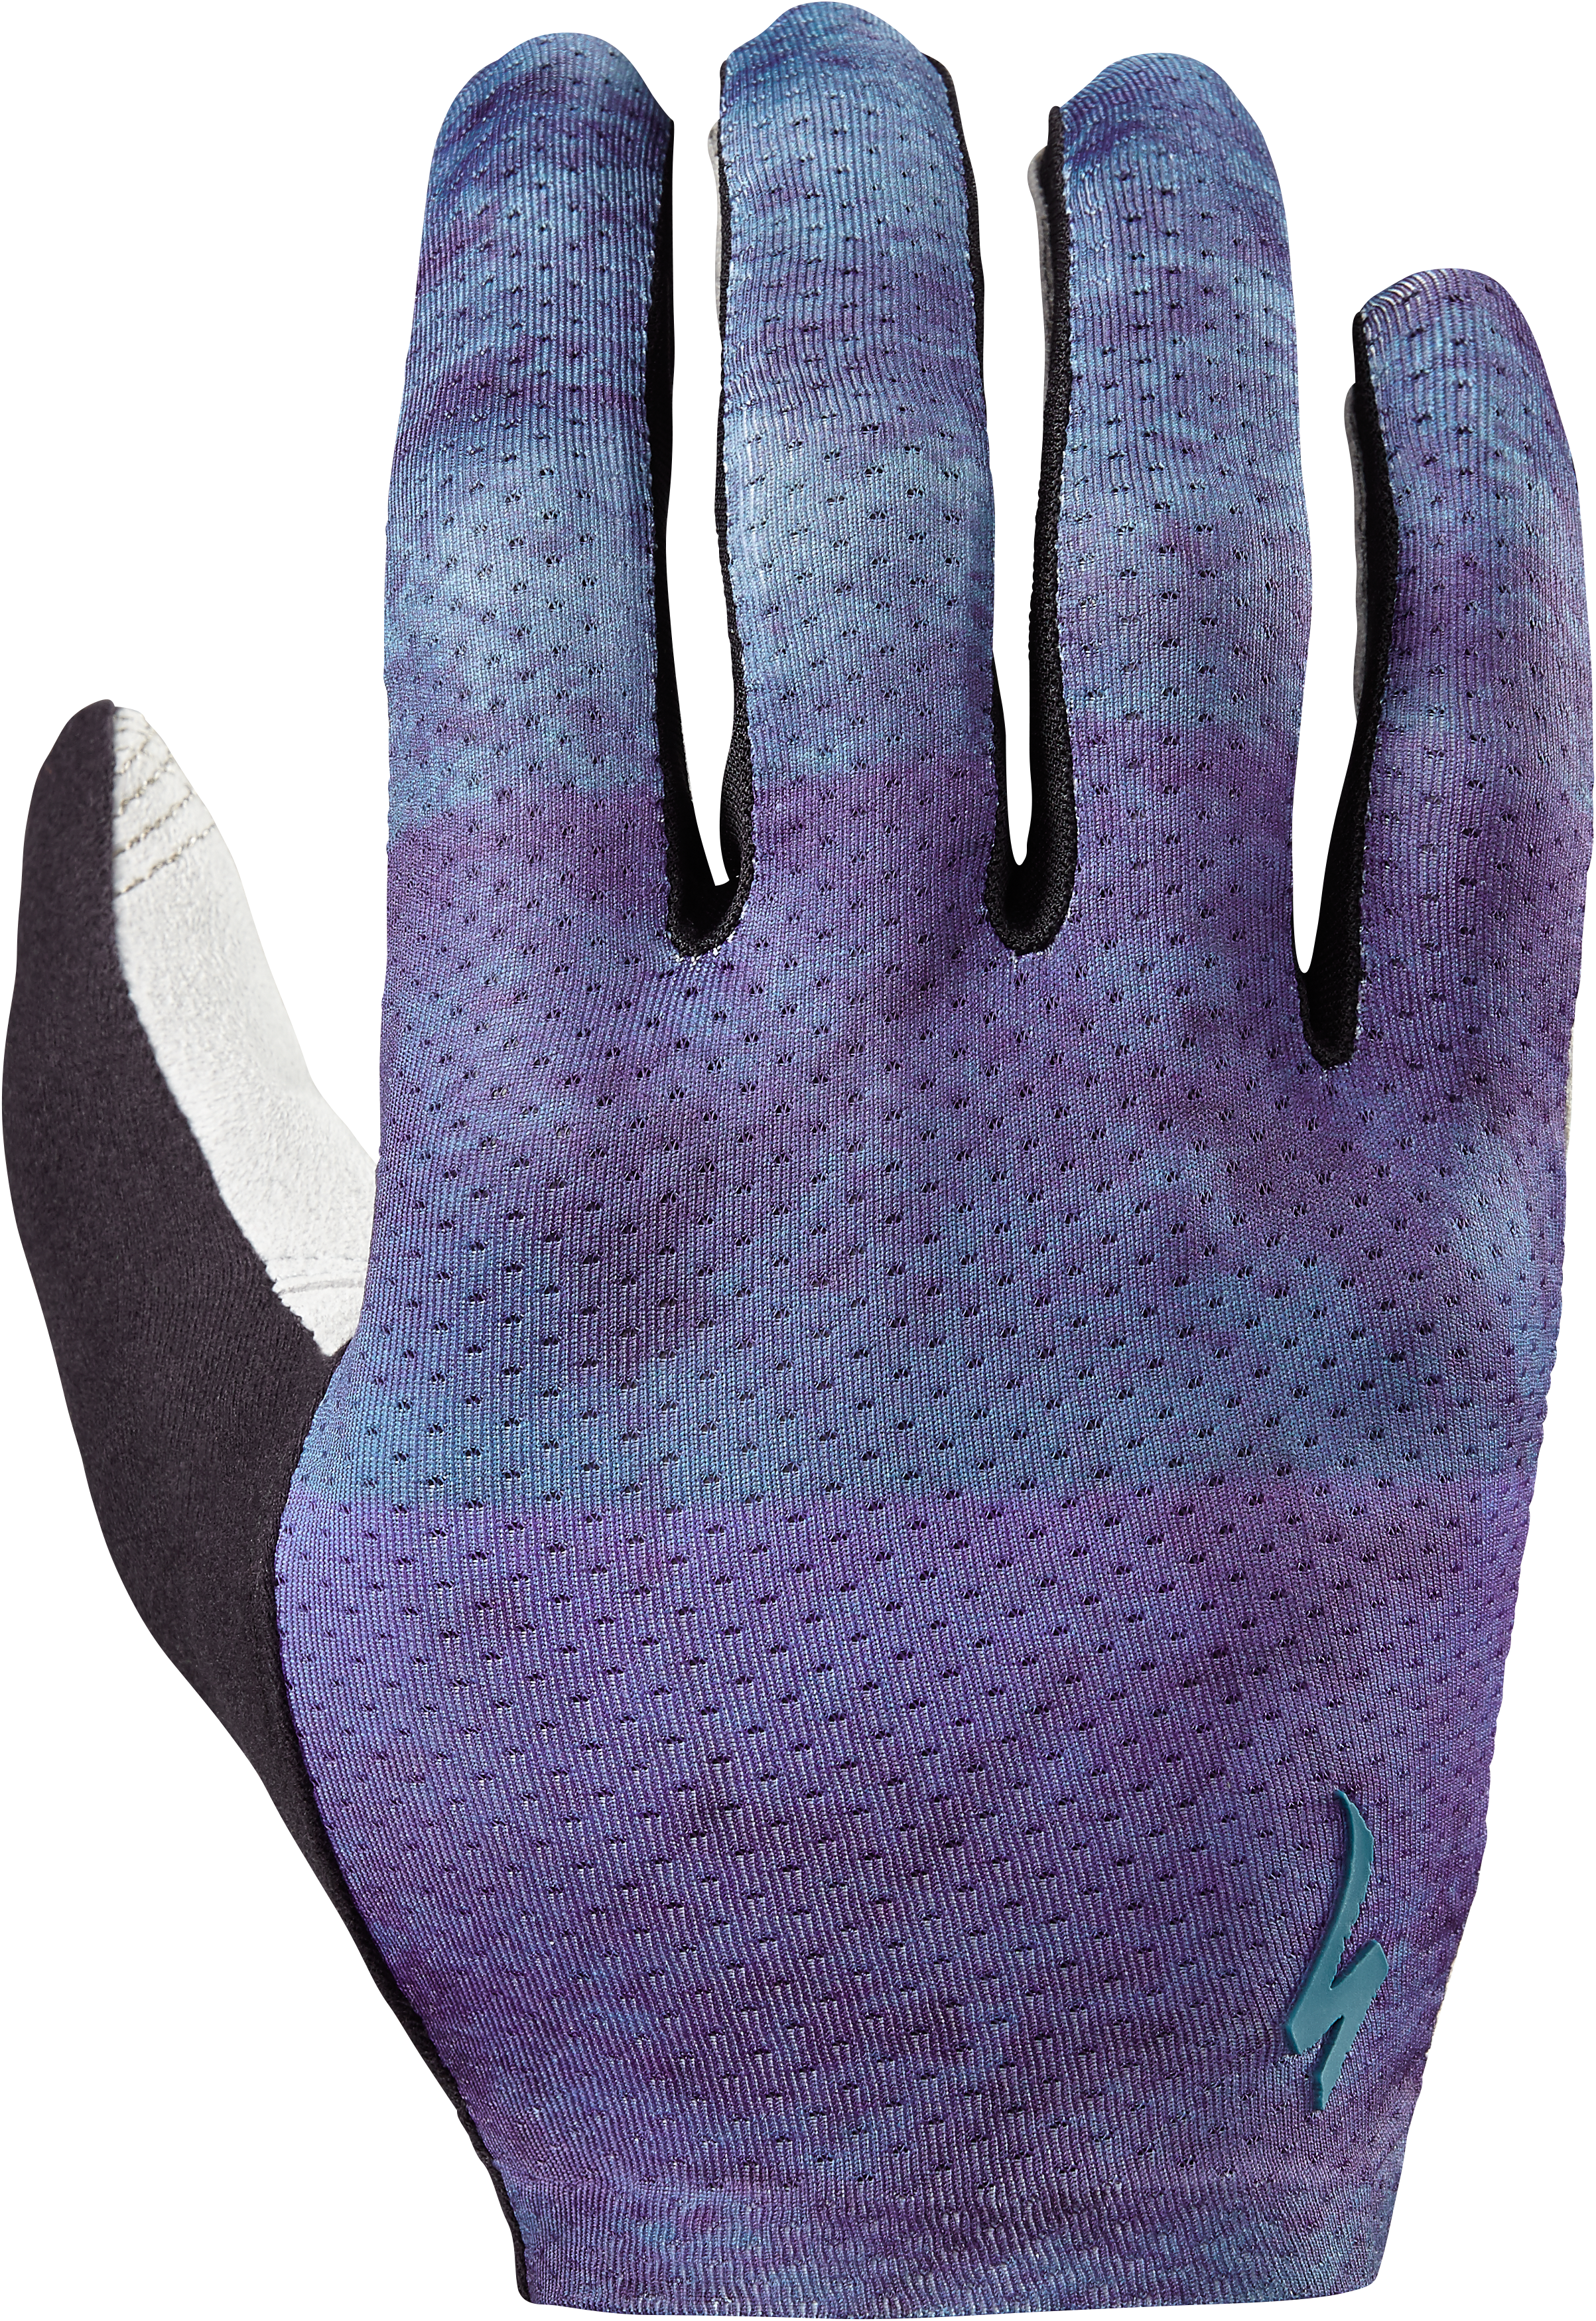 Grail Long Finger Gloves